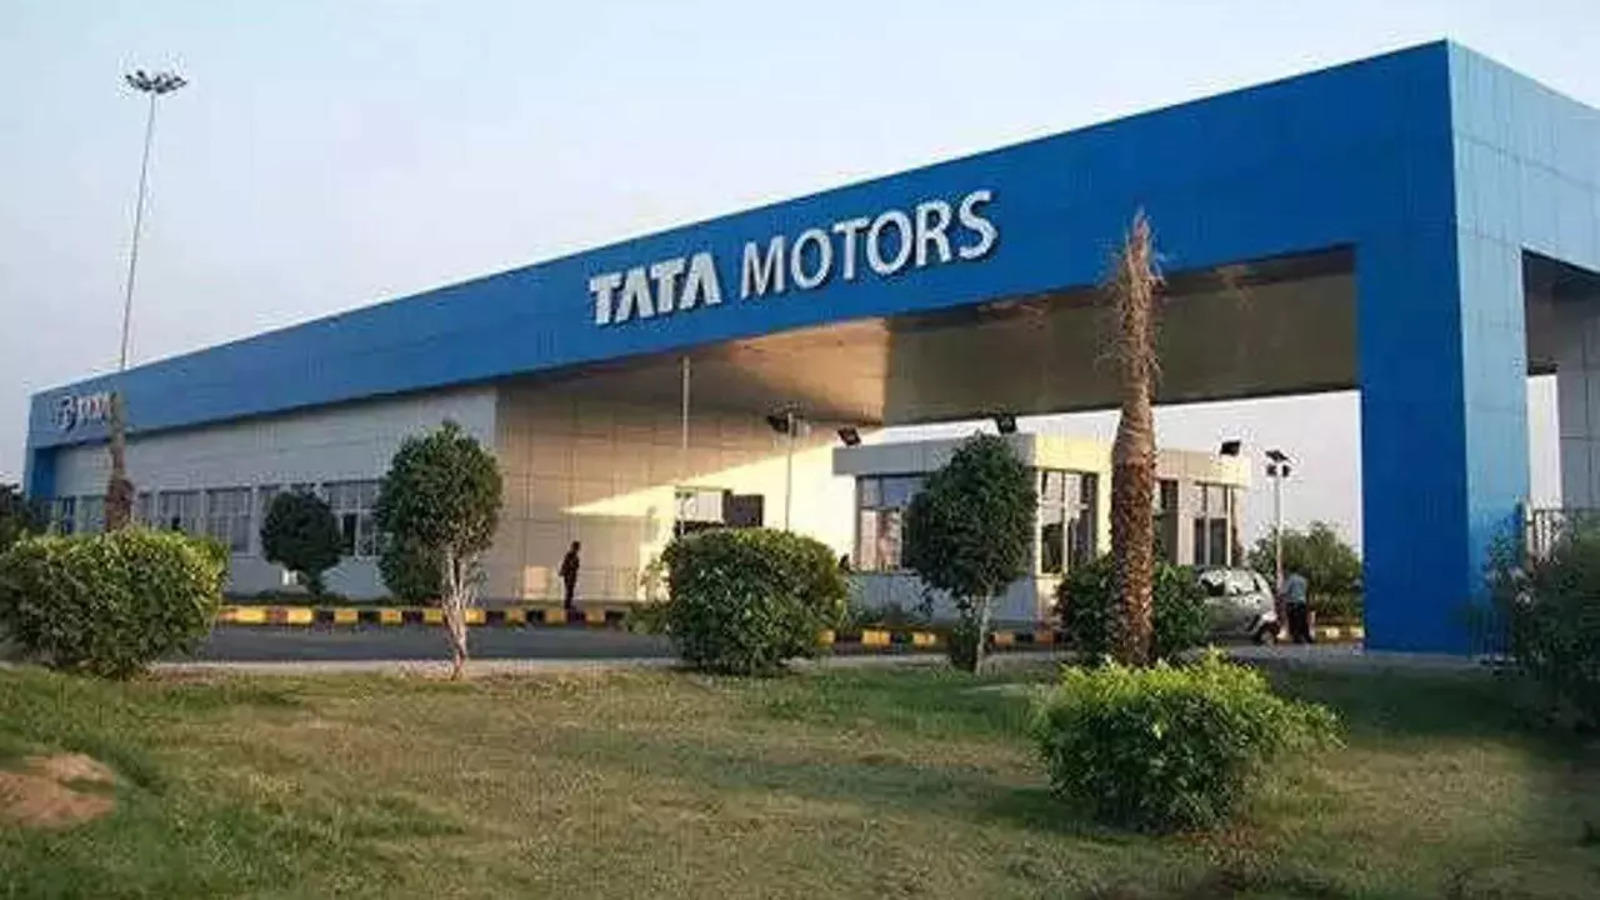 Tata schützt Neuwagen mit Safety-Bubble vor Corona